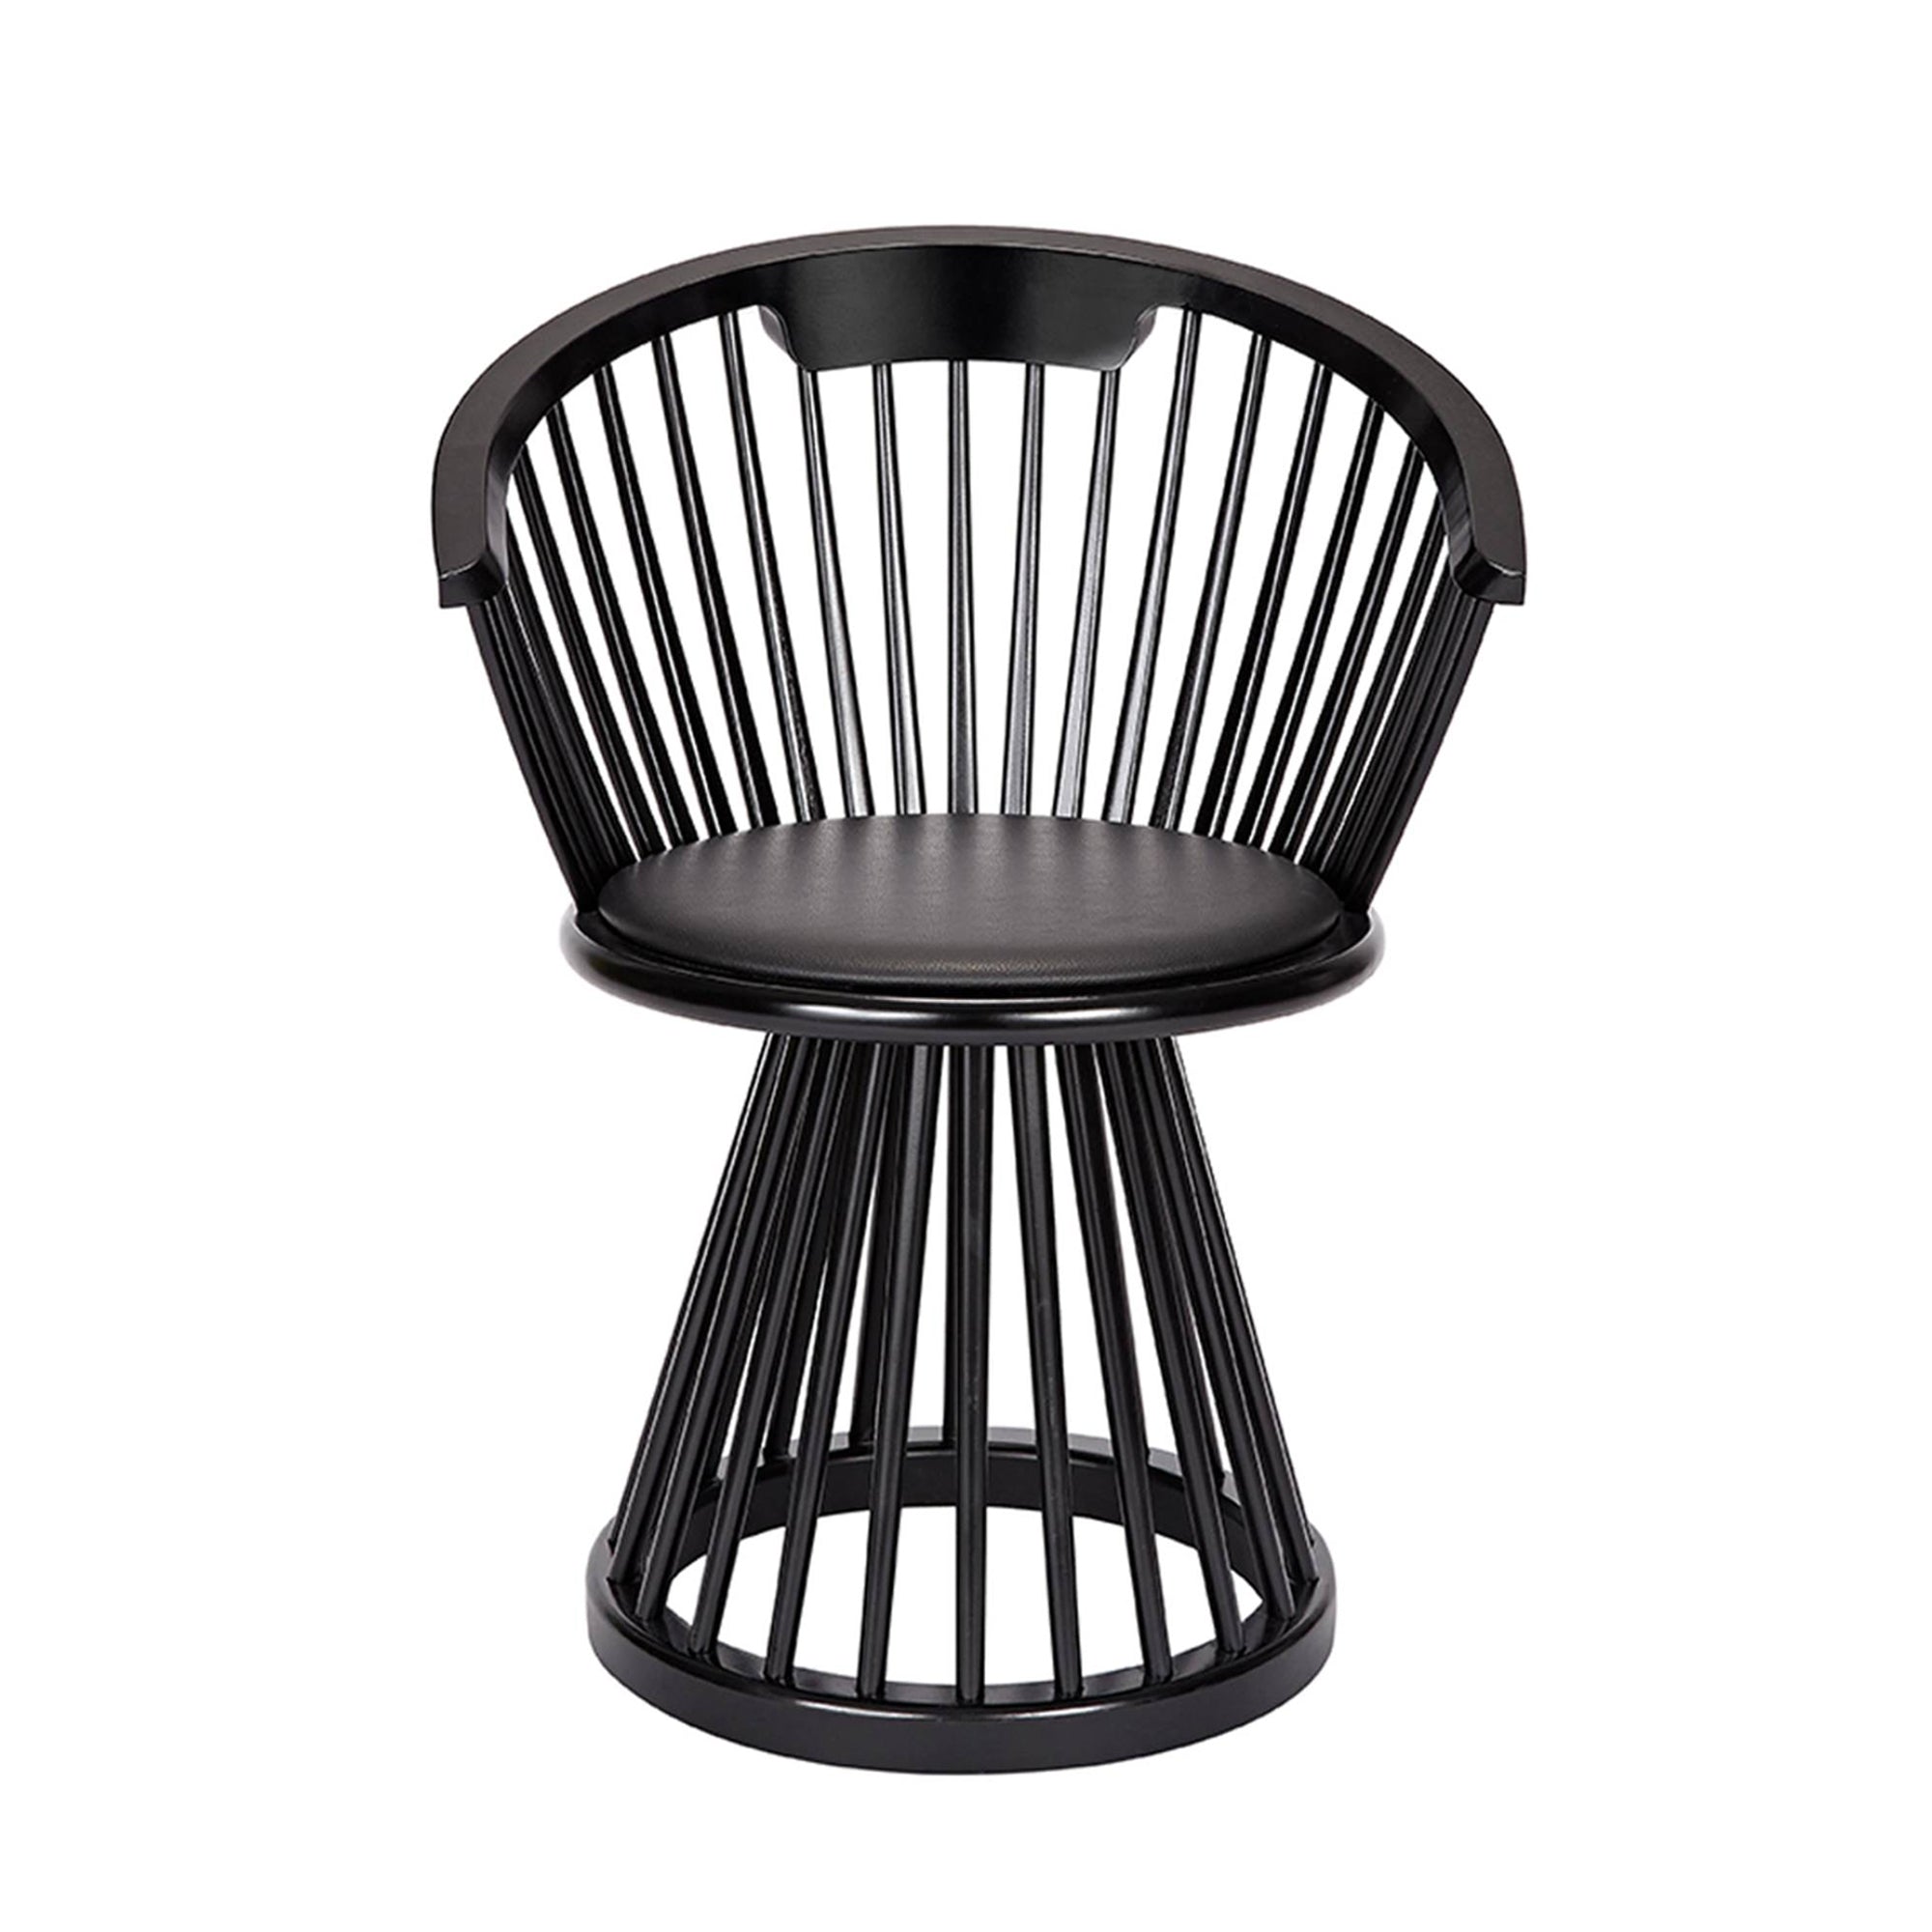 Fan Dining Chair: Black Birch